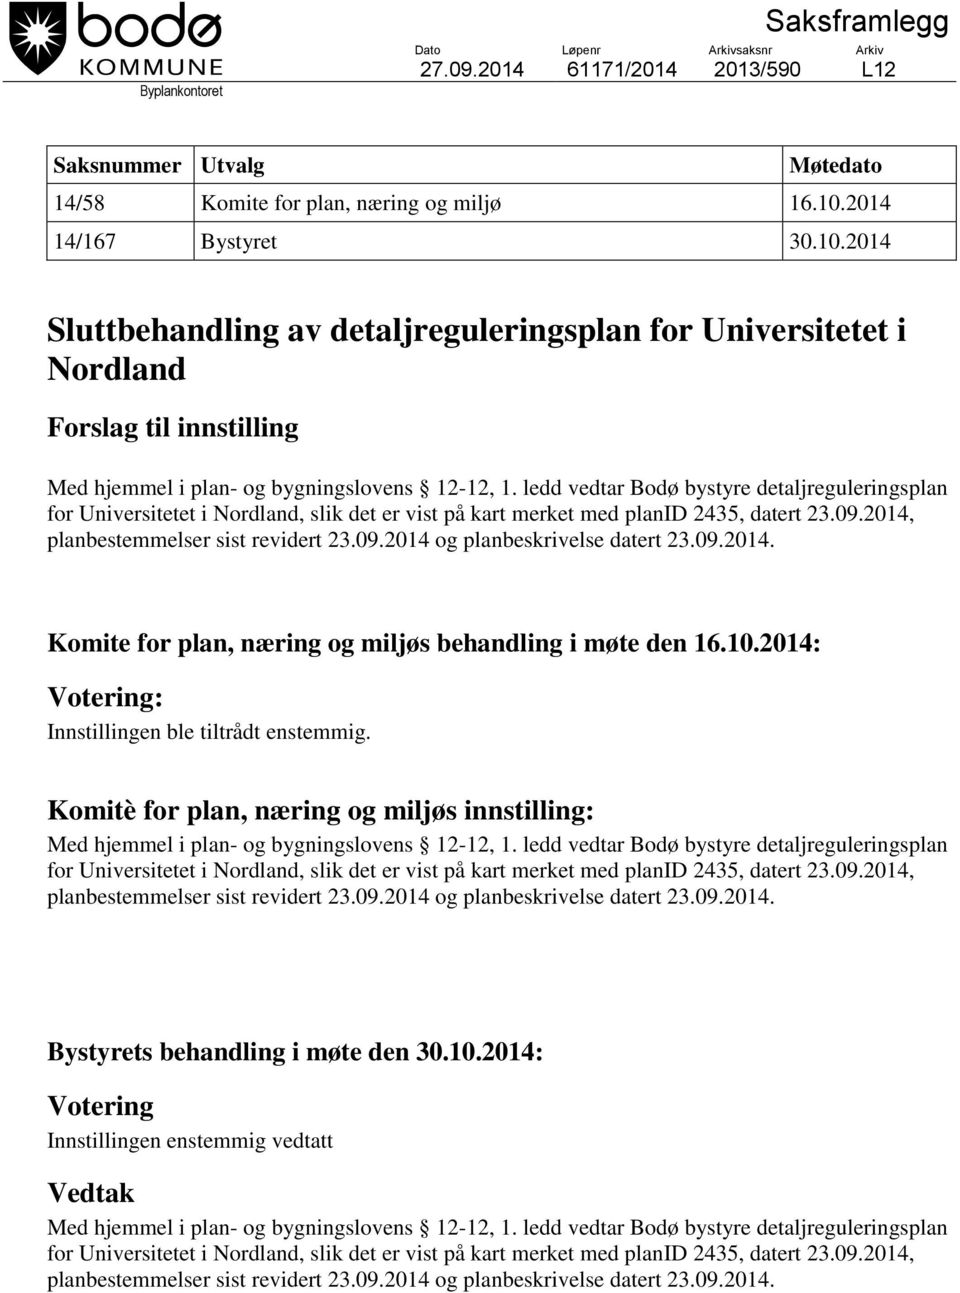 ledd vedtar Bodø bystyre detaljreguleringsplan for Universitetet i Nordland, slik det er vist på kart merket med planid 2435, datert 23.09.2014, planbestemmelser sist revidert 23.09.2014 og planbeskrivelse datert 23.